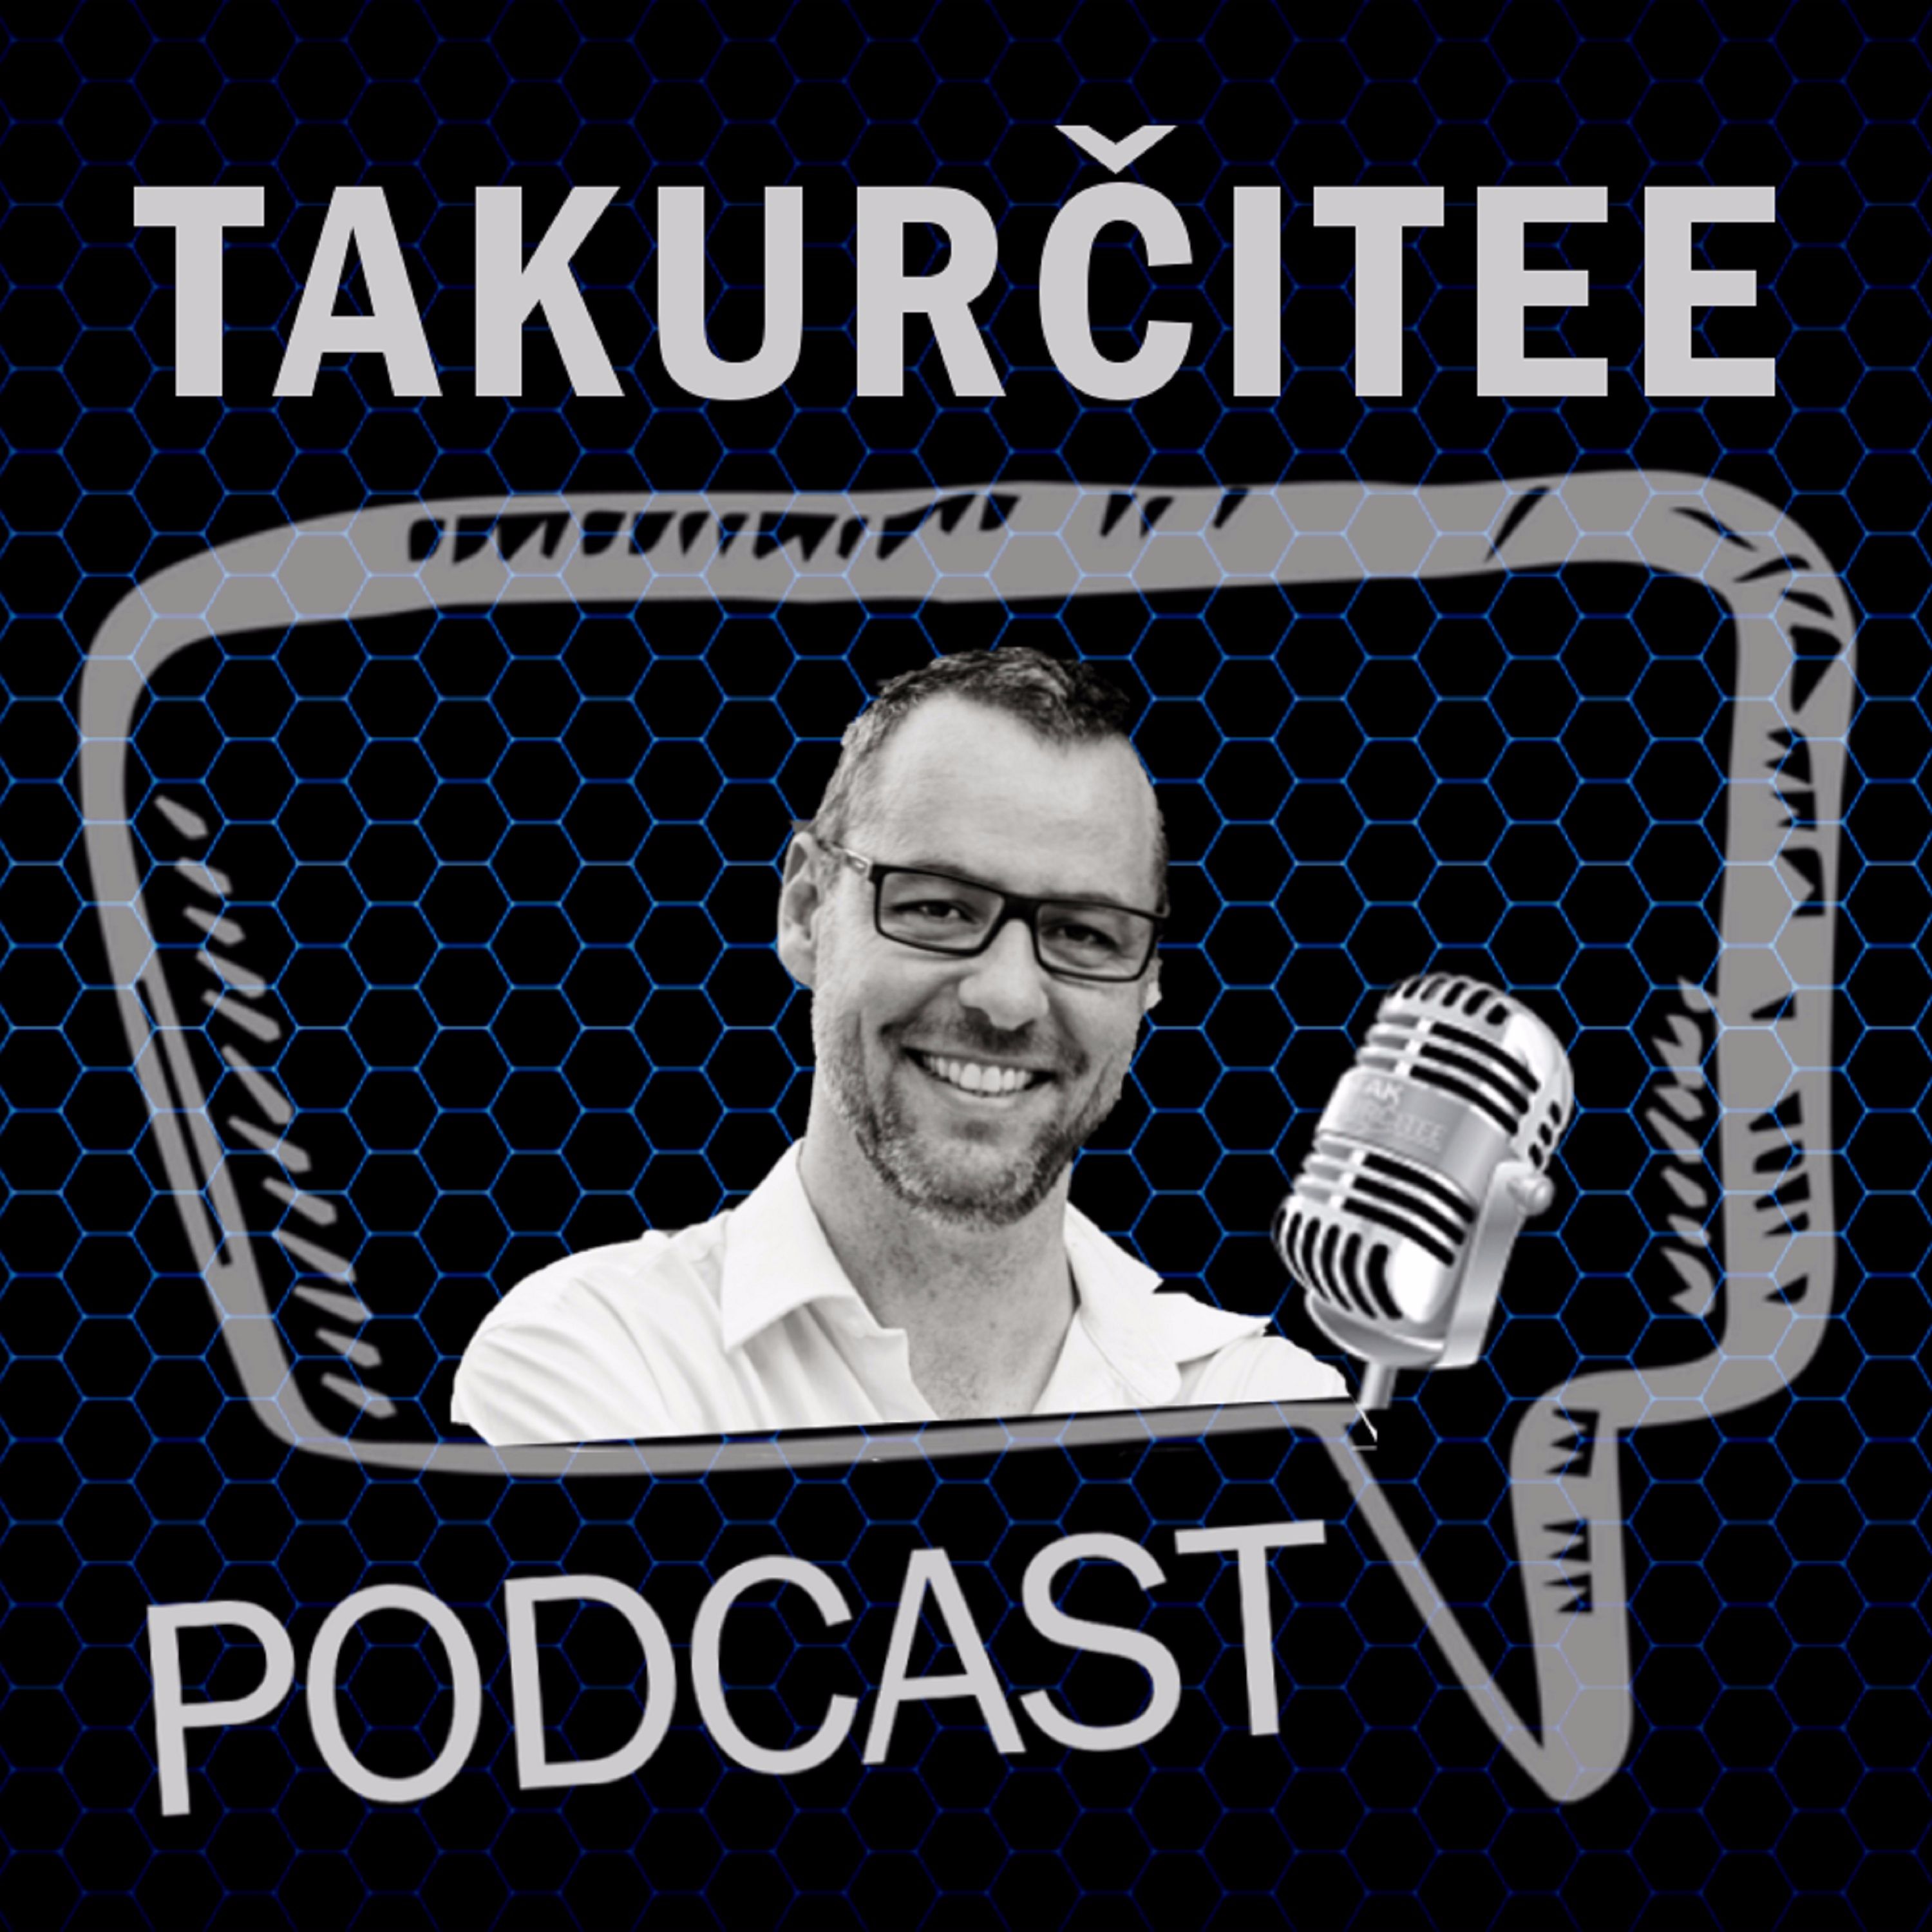 TakUrčitee Podcast, Ep. 19: MS 2017 s Tomášom Prokopom